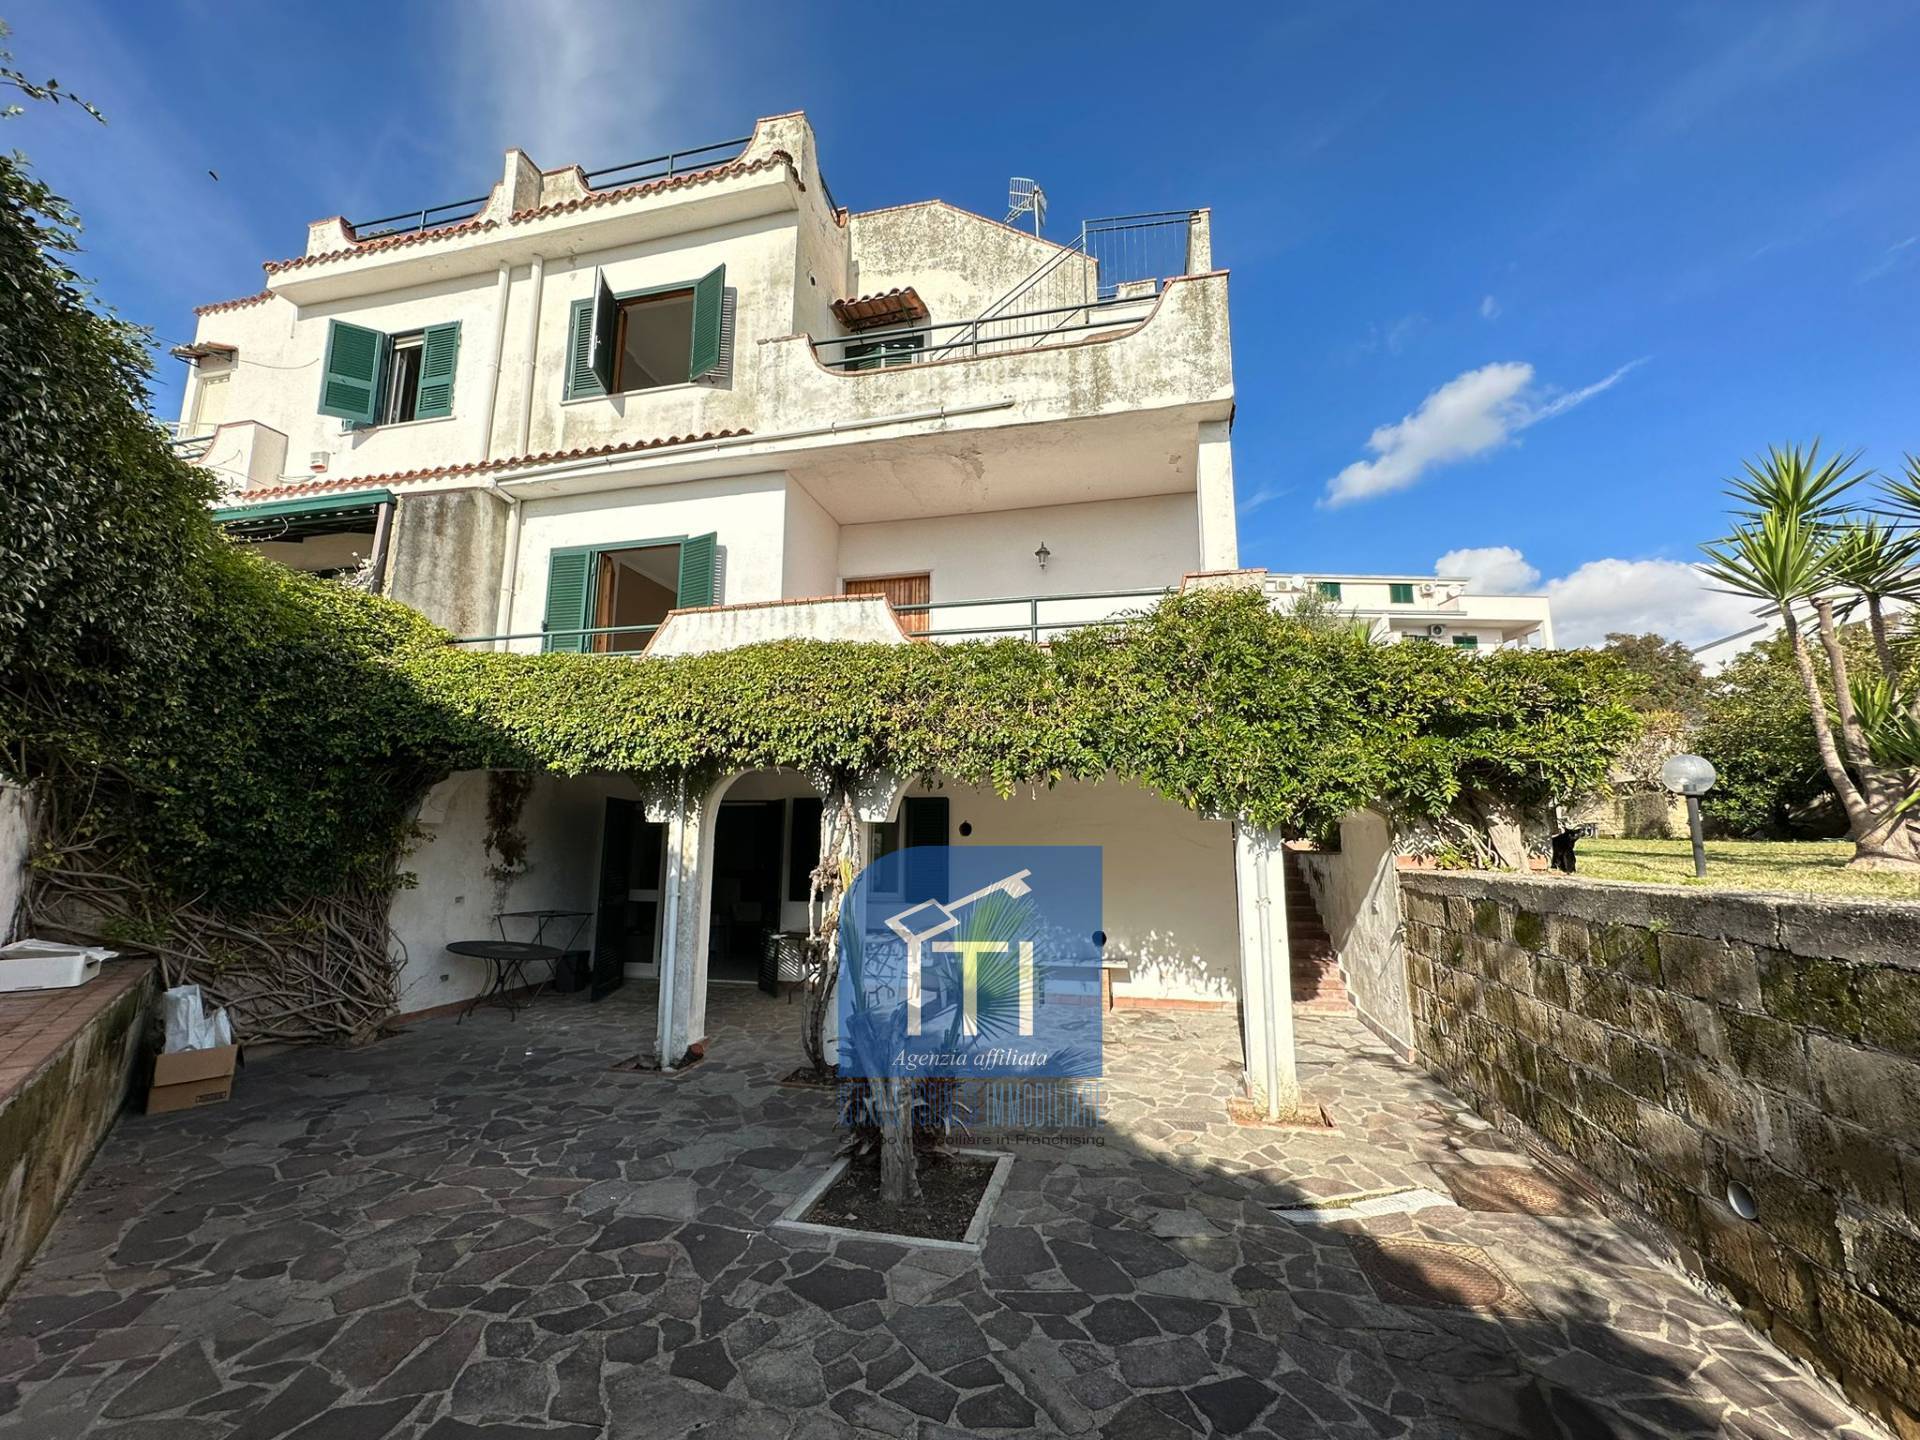 Villa Bifamiliare in vendita a Giugliano in Campania, 5 locali, zona la, prezzo € 335.000 | PortaleAgenzieImmobiliari.it